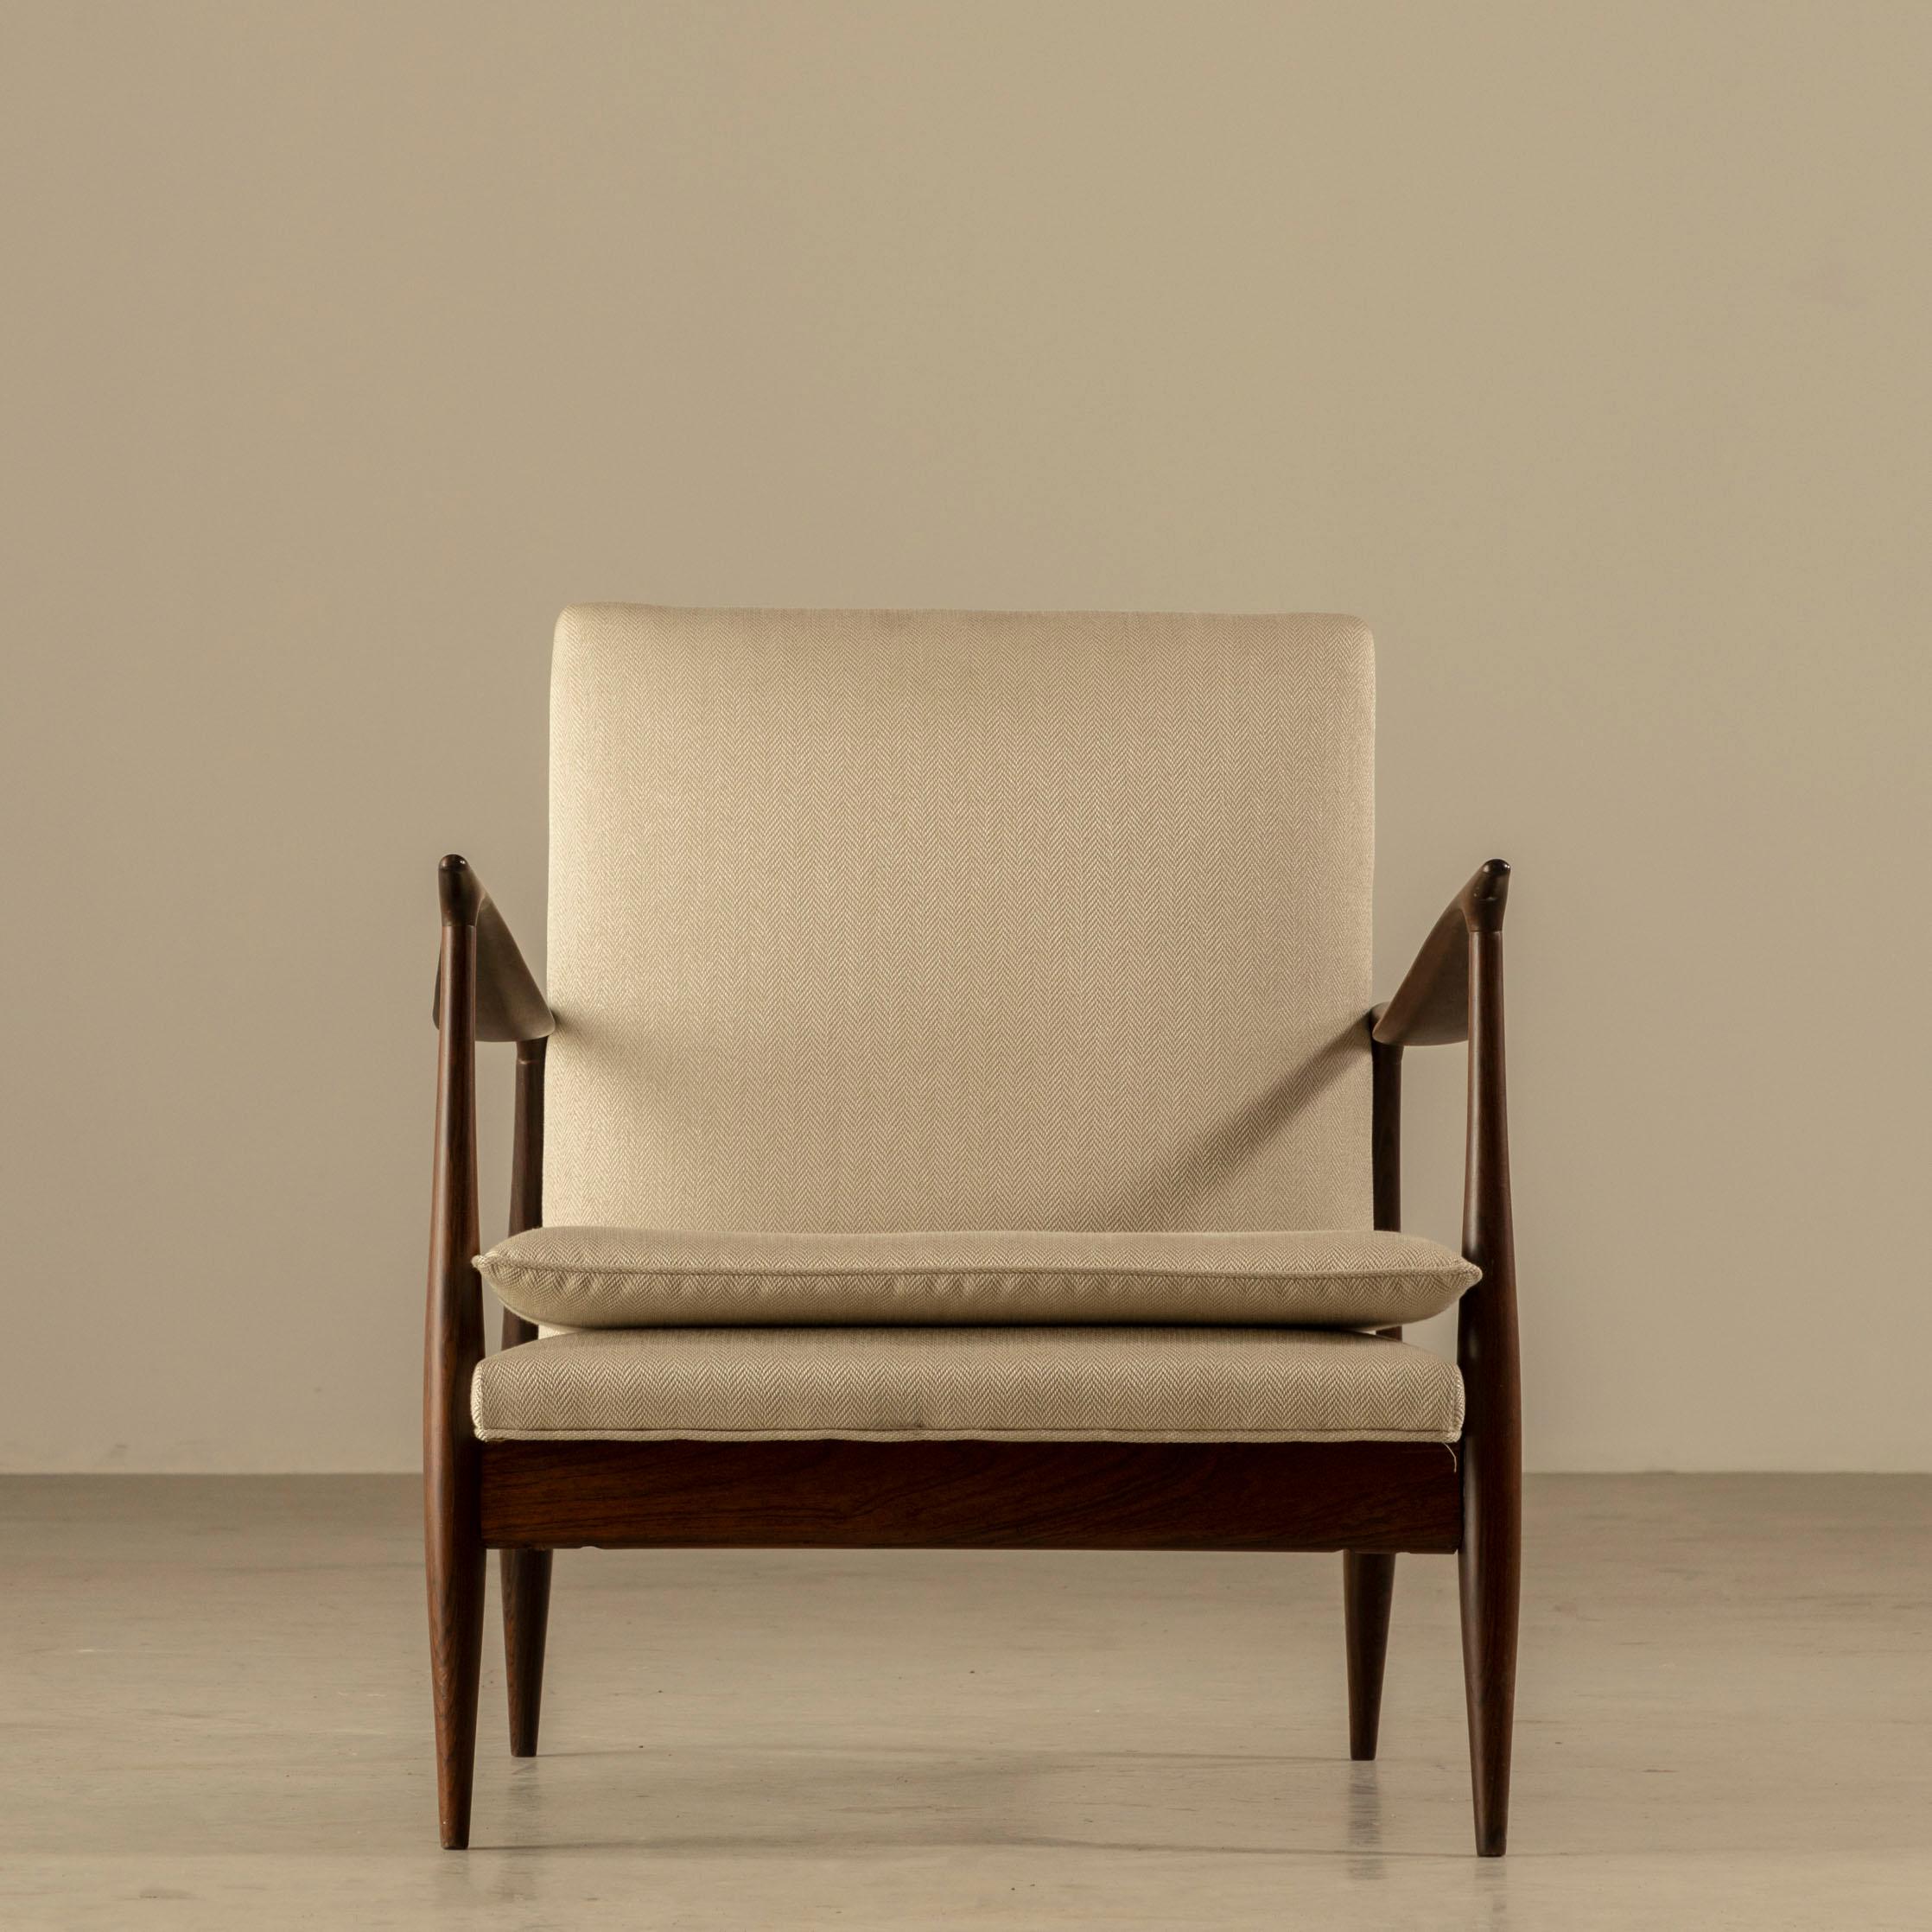 Ces chaises longues de Giuseppe Scapinelli sont un exemple étonnant du design moderne brésilien du milieu du siècle dernier. Créées dans les années 60, les chaises témoignent du style singulier de Scapinelli. Contrairement aux lignes droites et aux